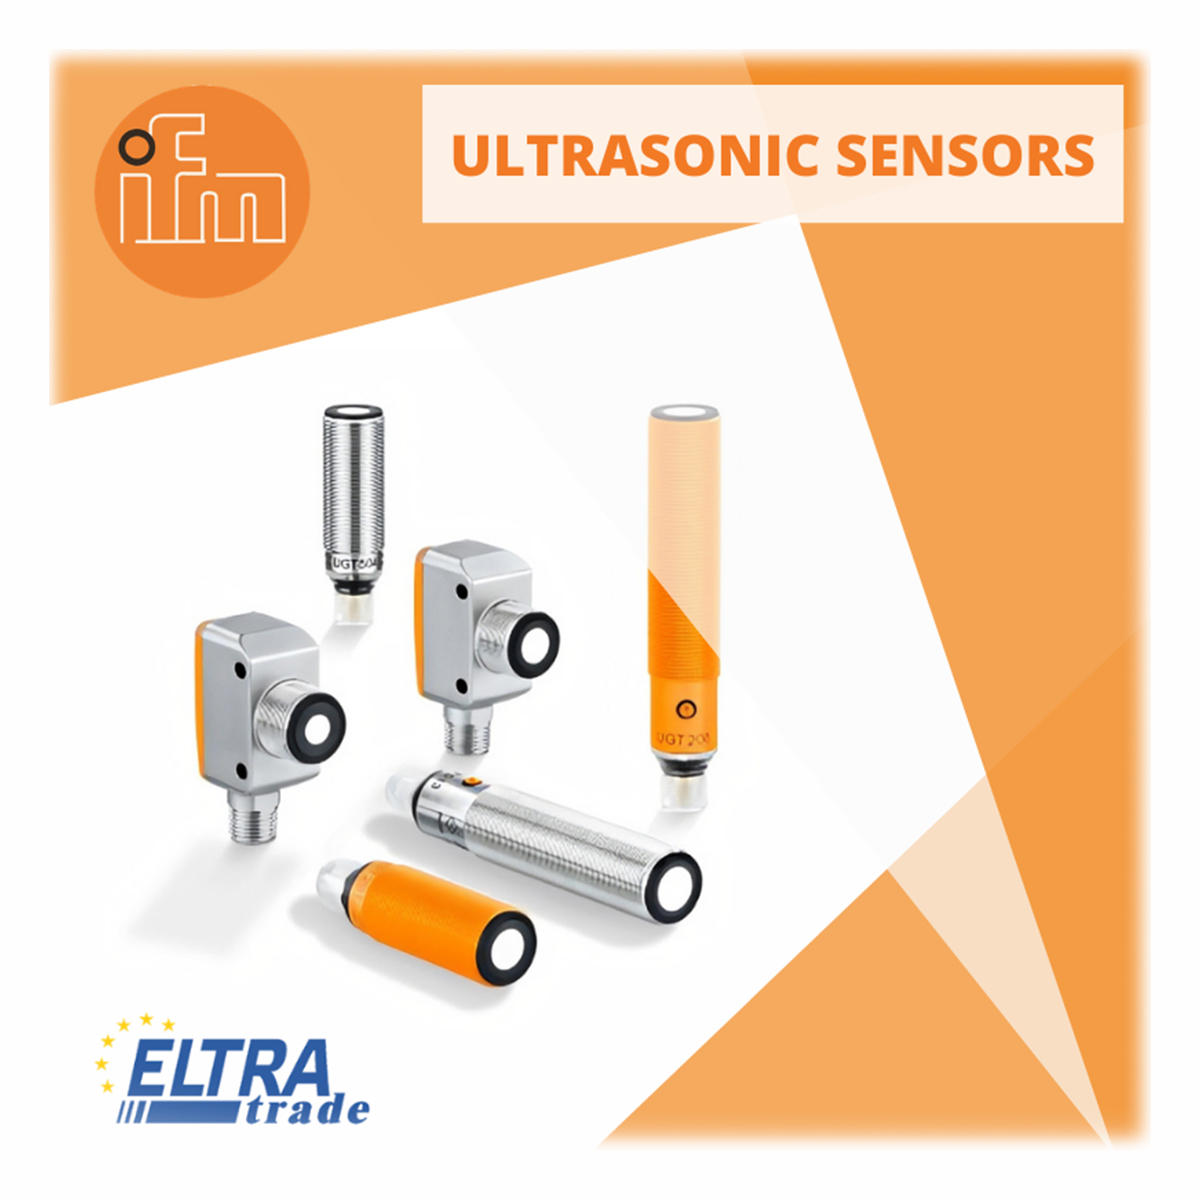 ifm ultrasonic sensors photo